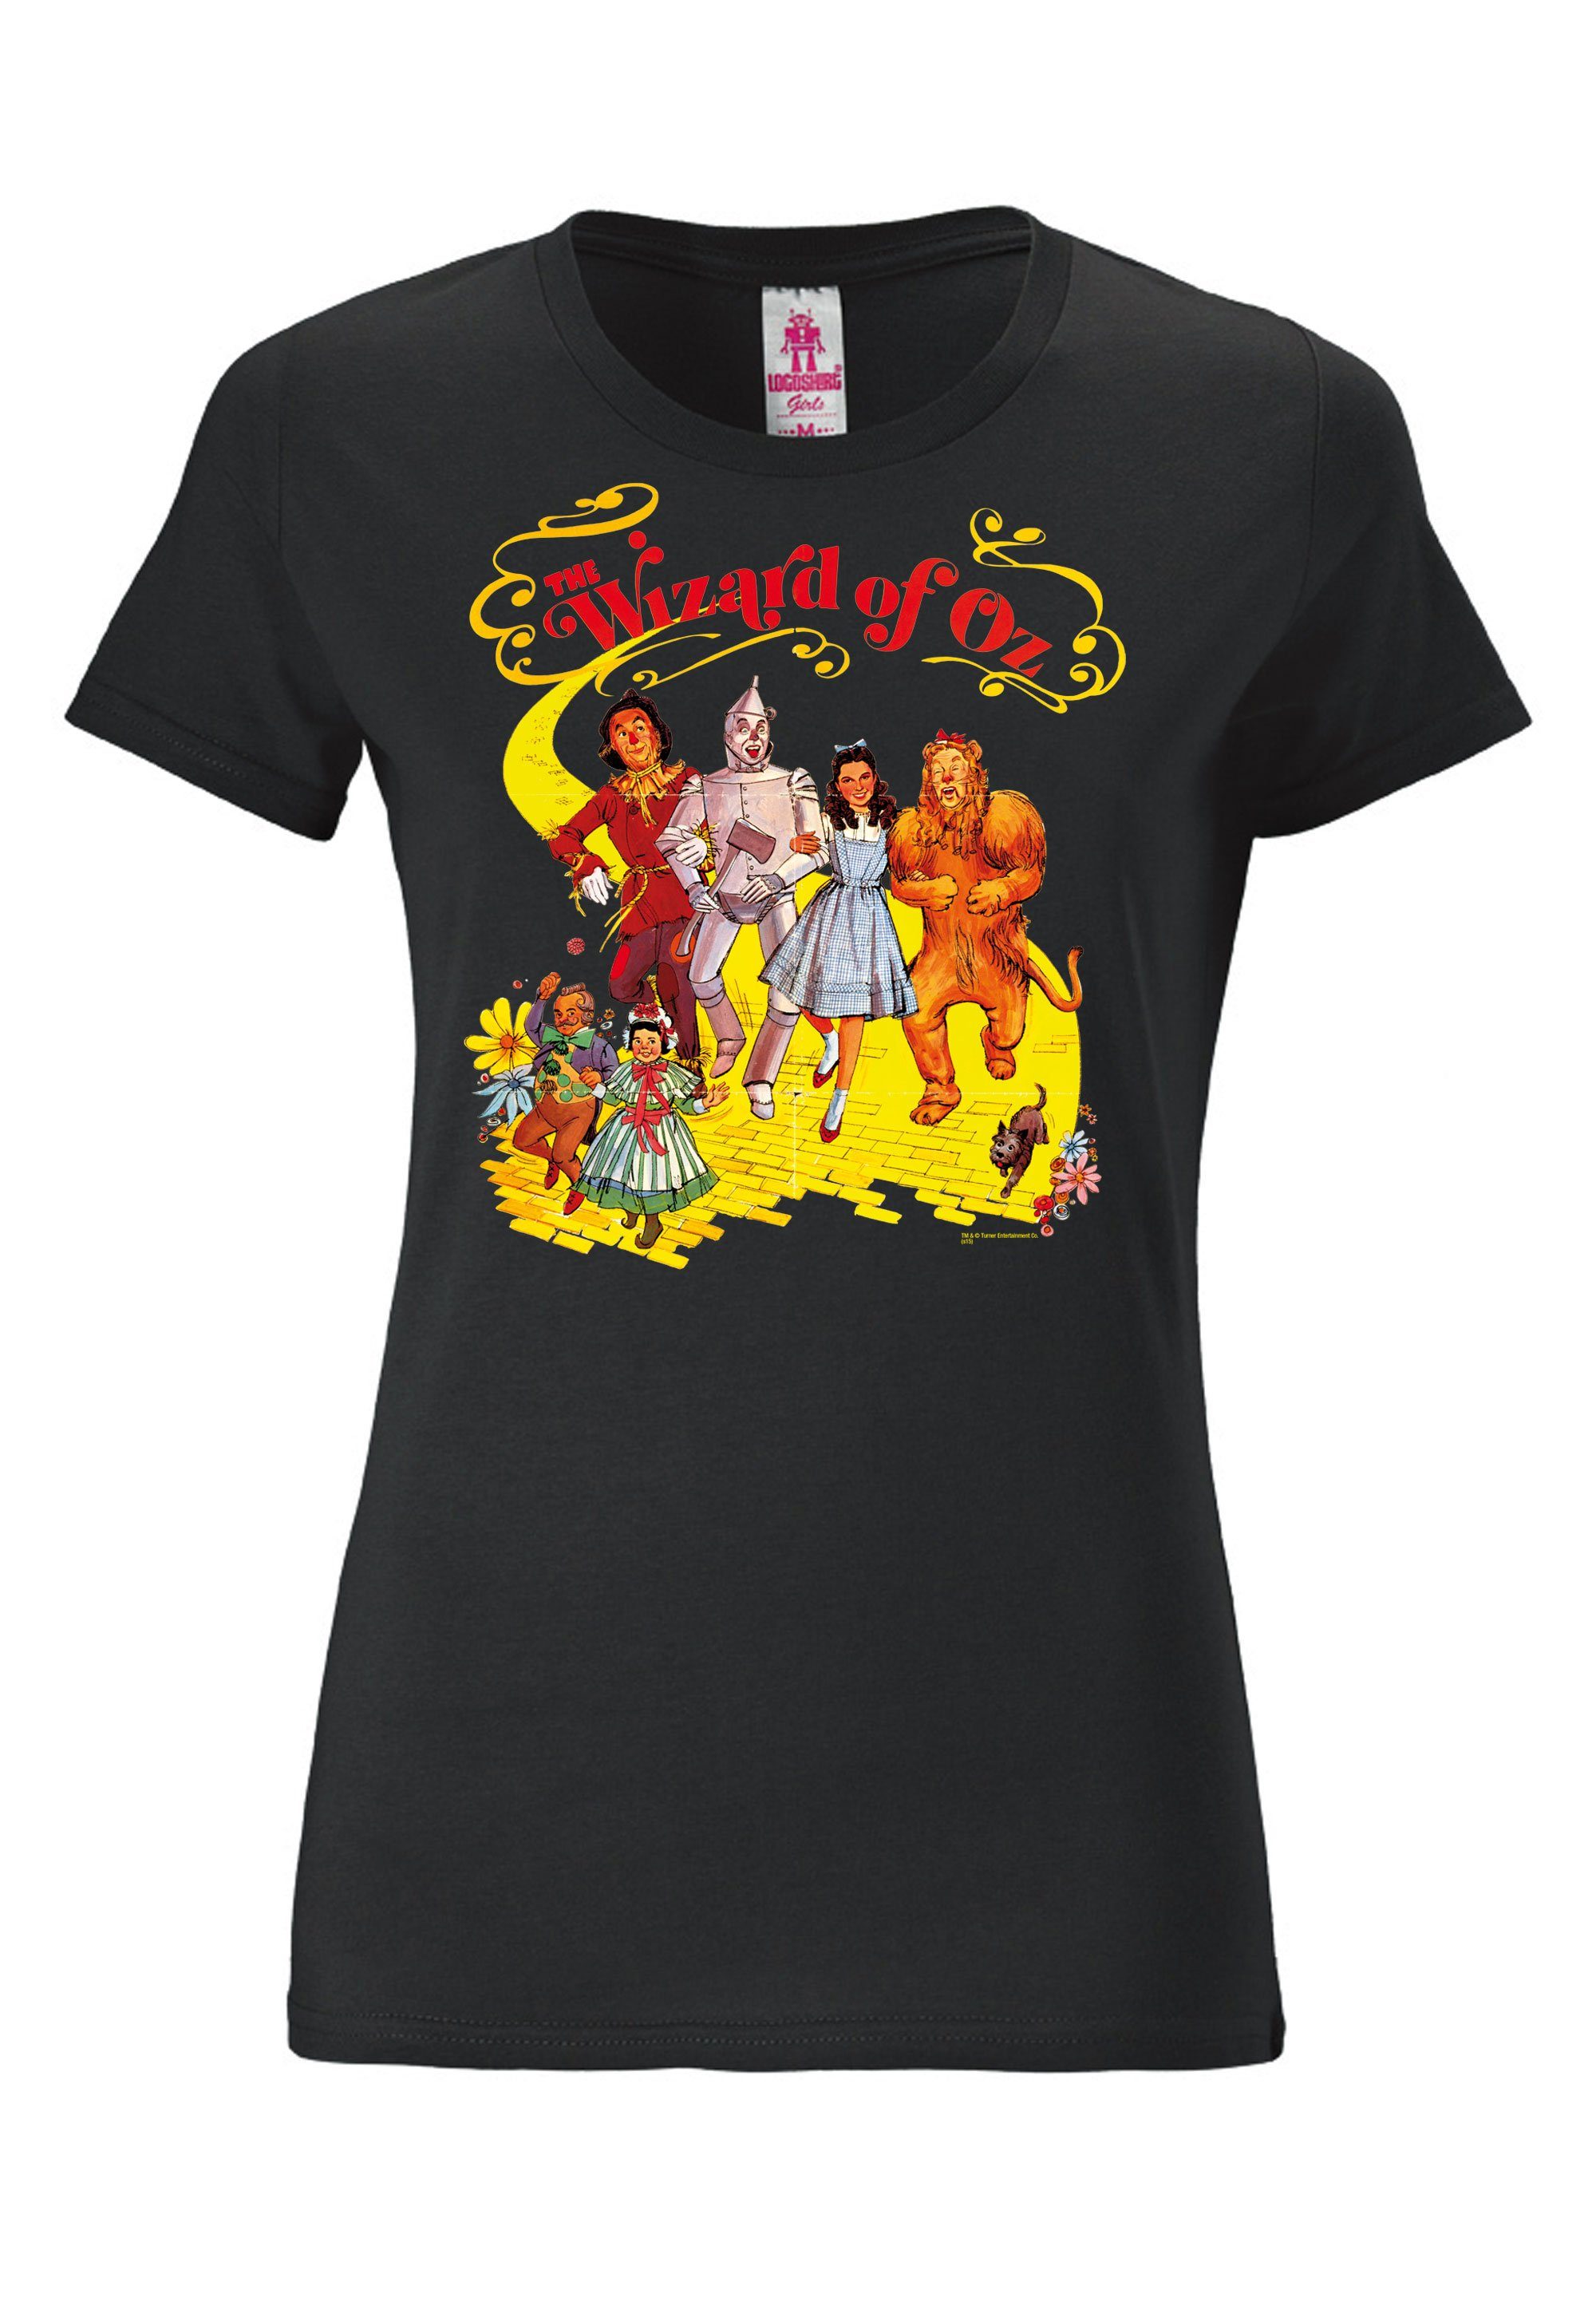 Oz von LOGOSHIRT Zauberer Yellow - Retro-Print tollem T-Shirt Brick Der Road mit